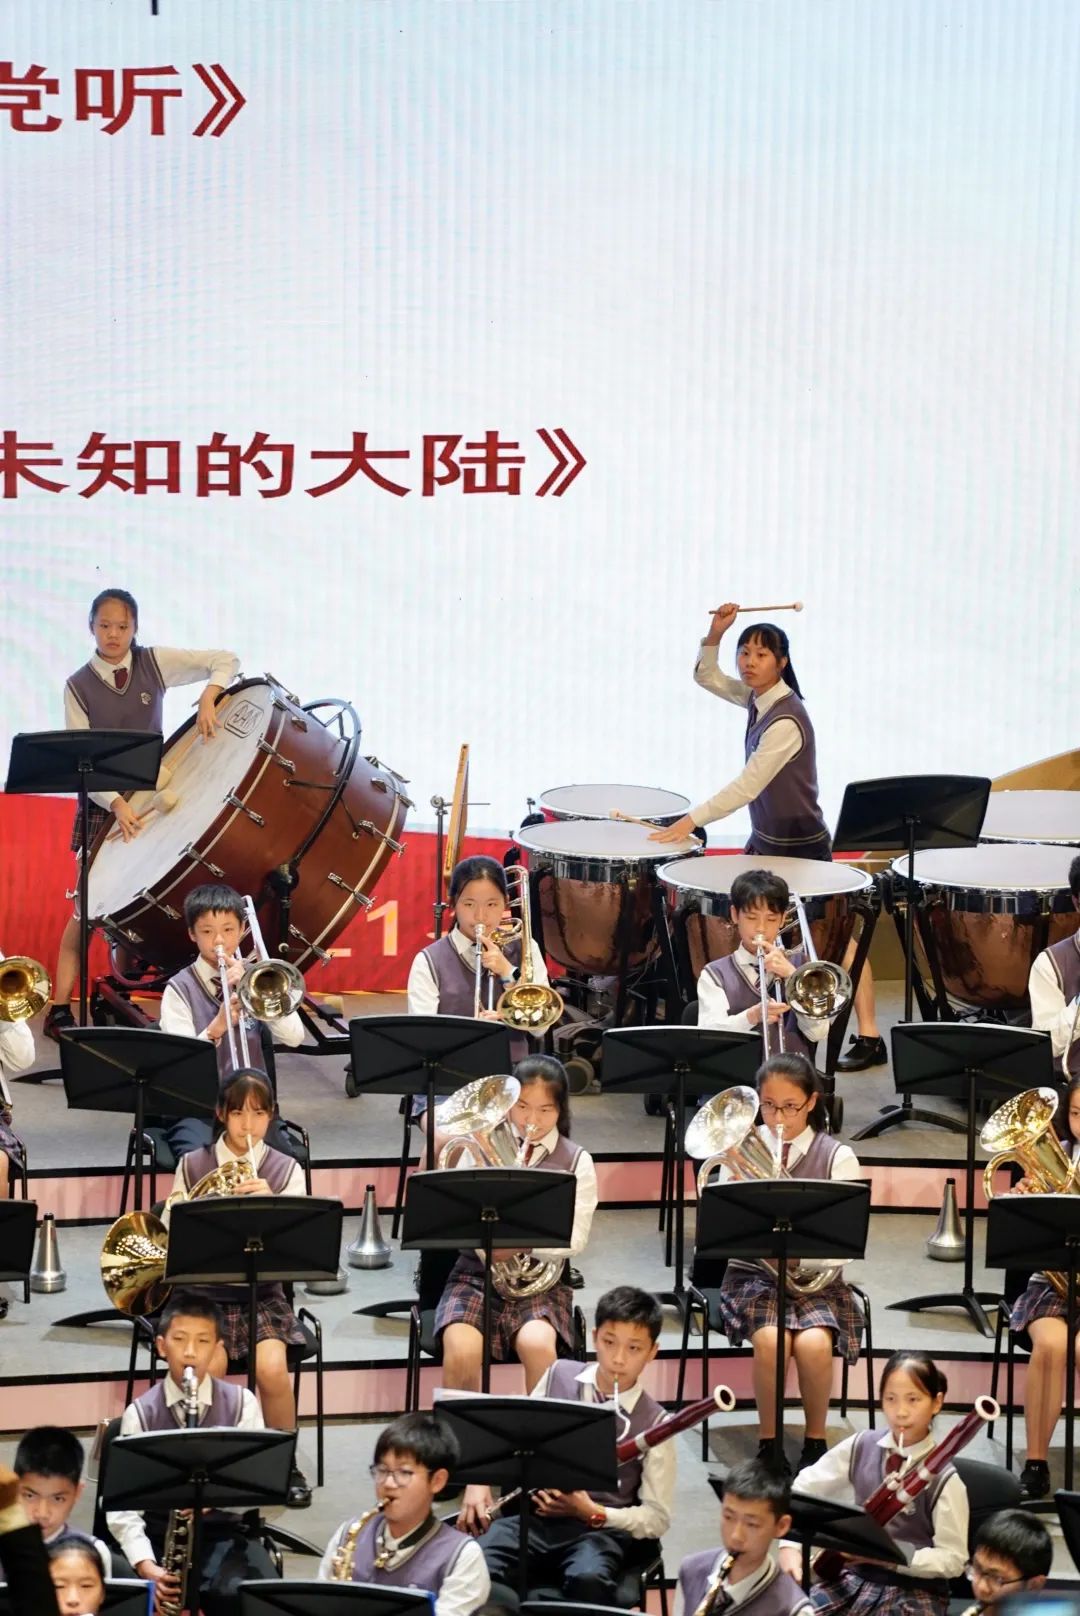 上海民办协和双语尚音学校协奏和谐乐章 喜获“示范乐团”